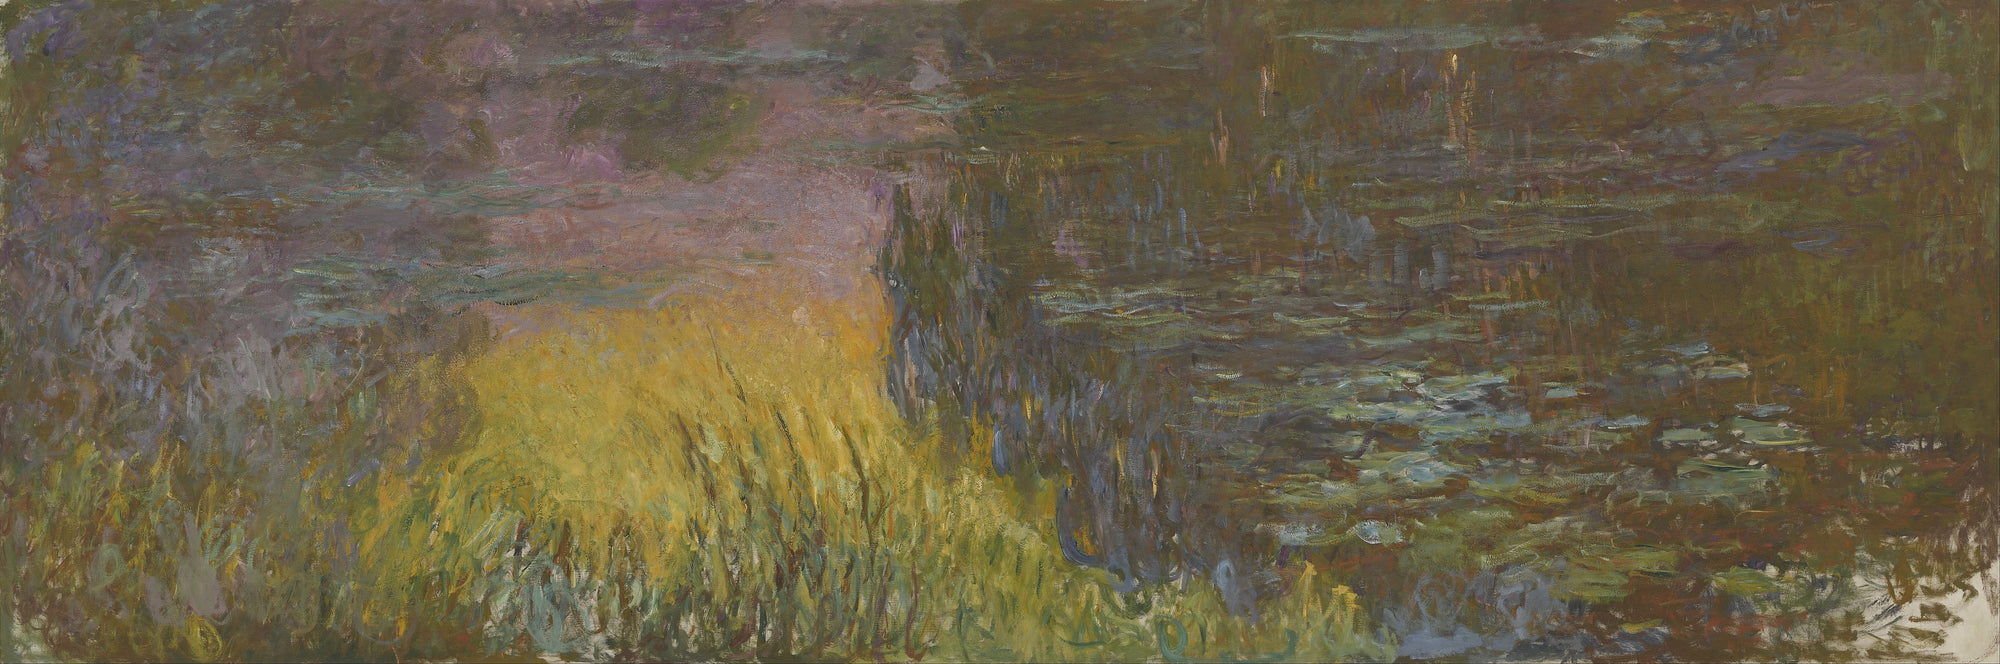 Nymphéas, Soleil couchant - Claude Monet